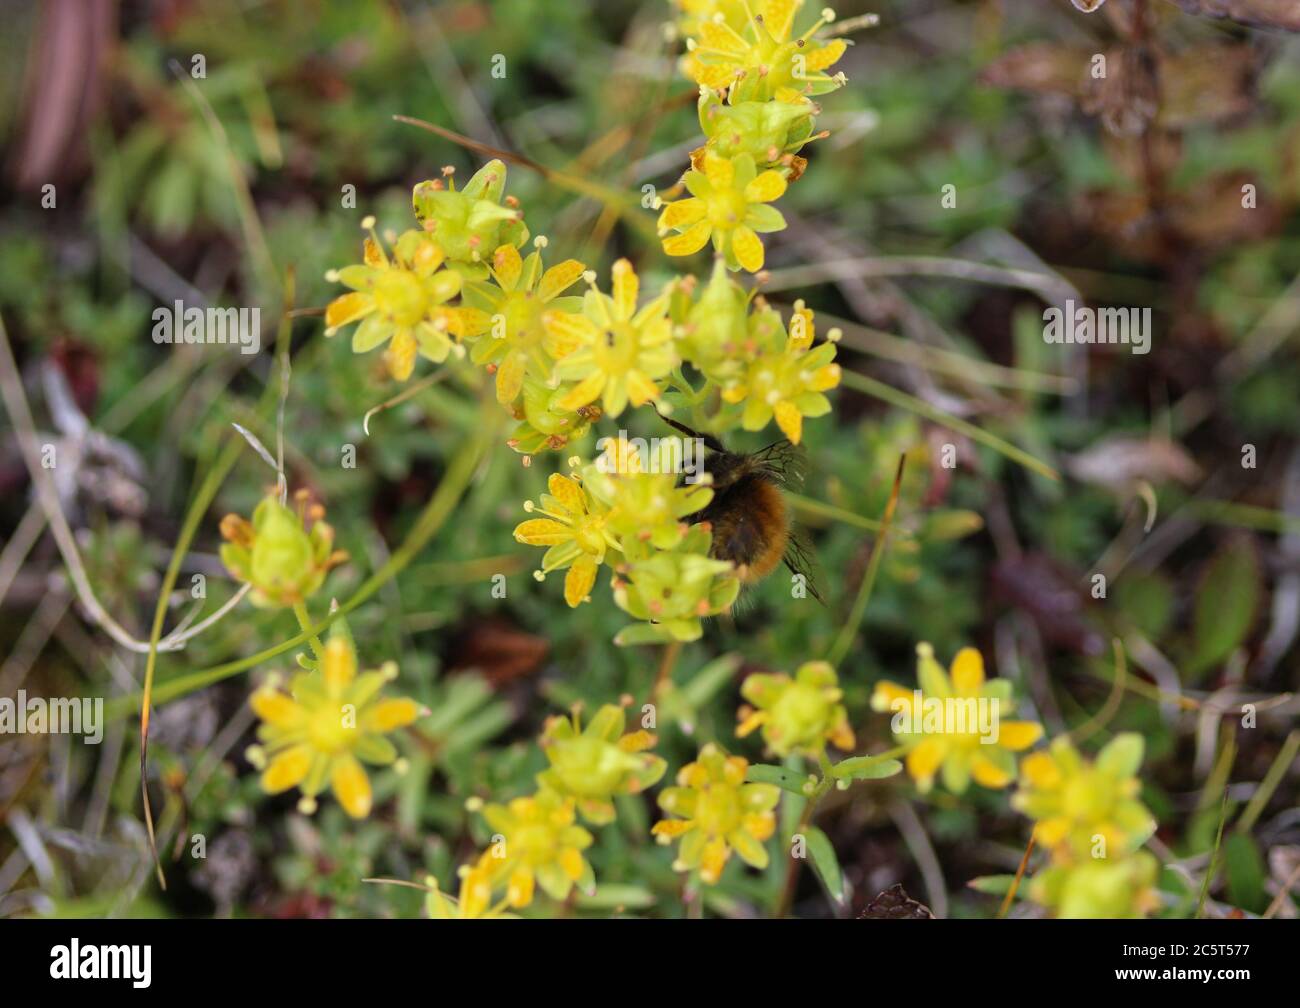 Close up of Saxifraga aizoides flower, also known as yellow mountain saxifrage or yellow saxifrage Stock Photo